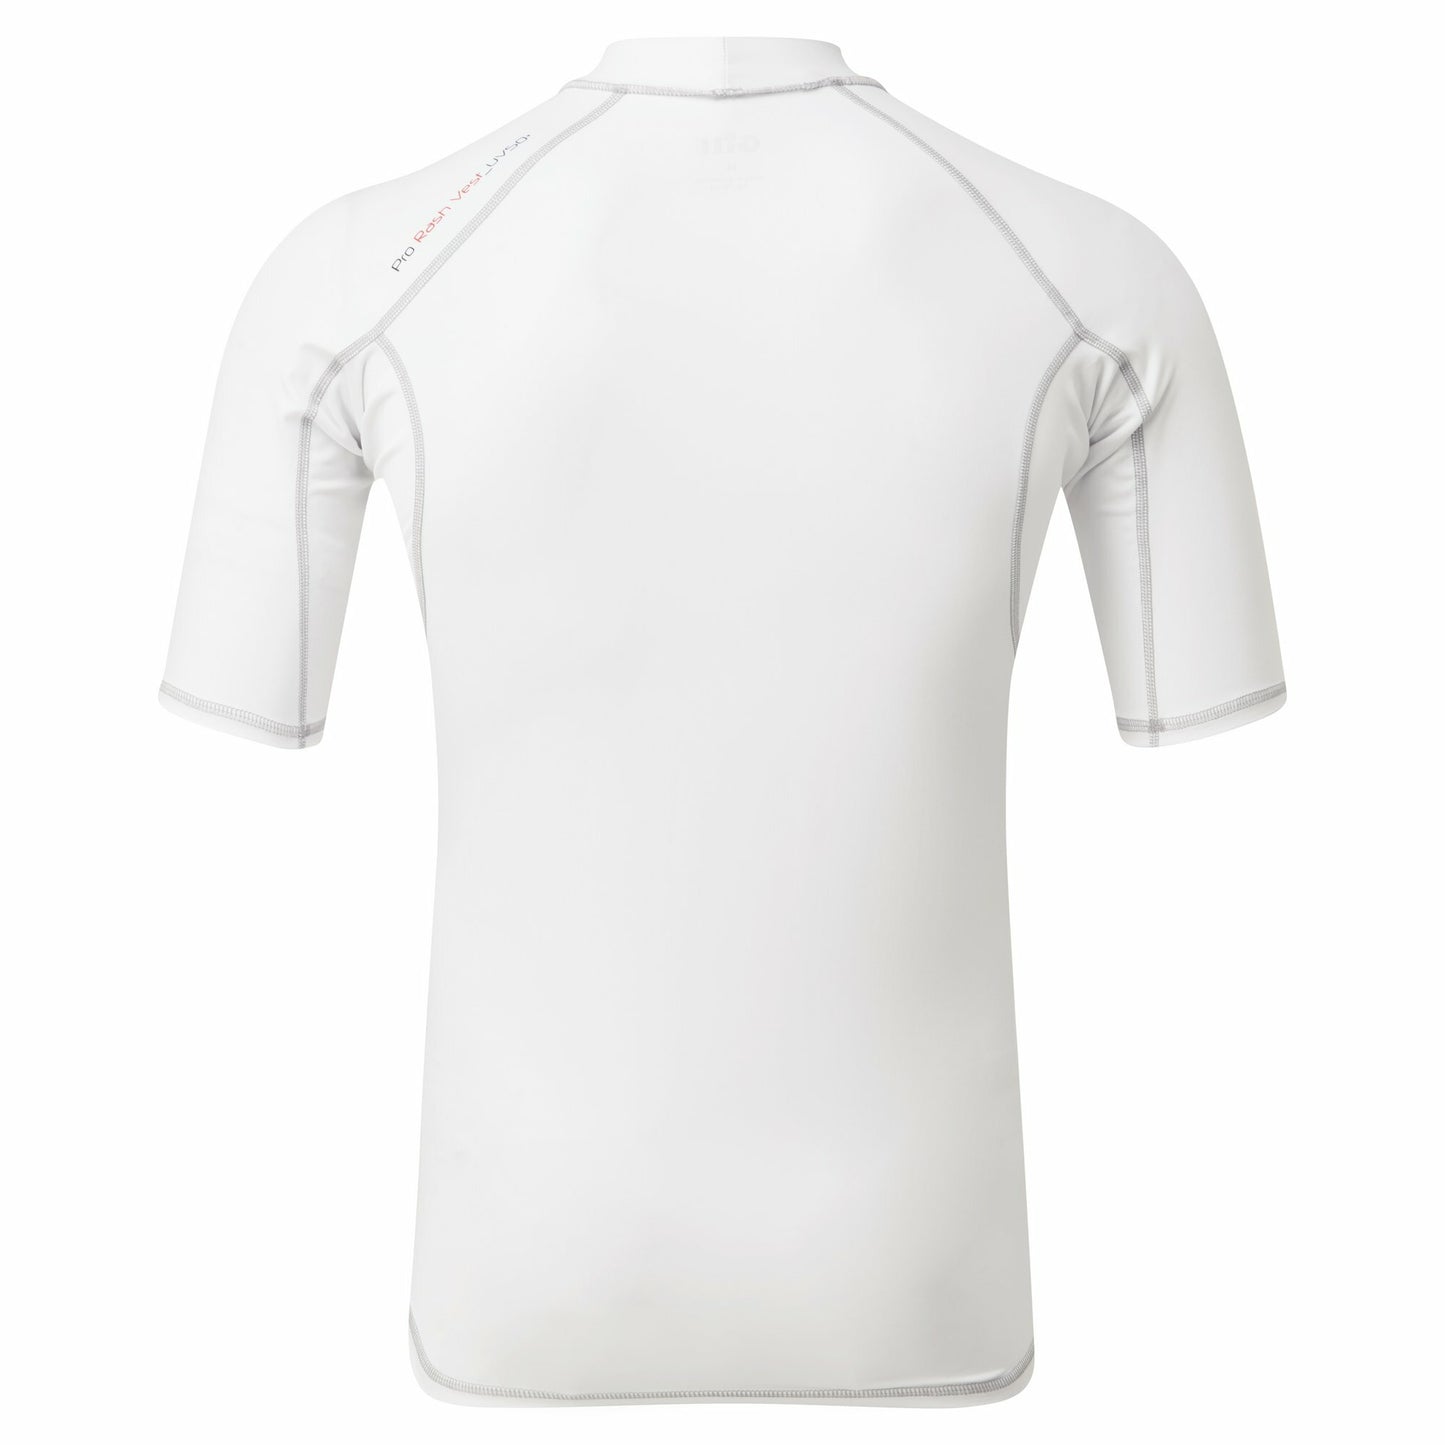 Gill Pro Rash Vest Men's Short Sleeved - White